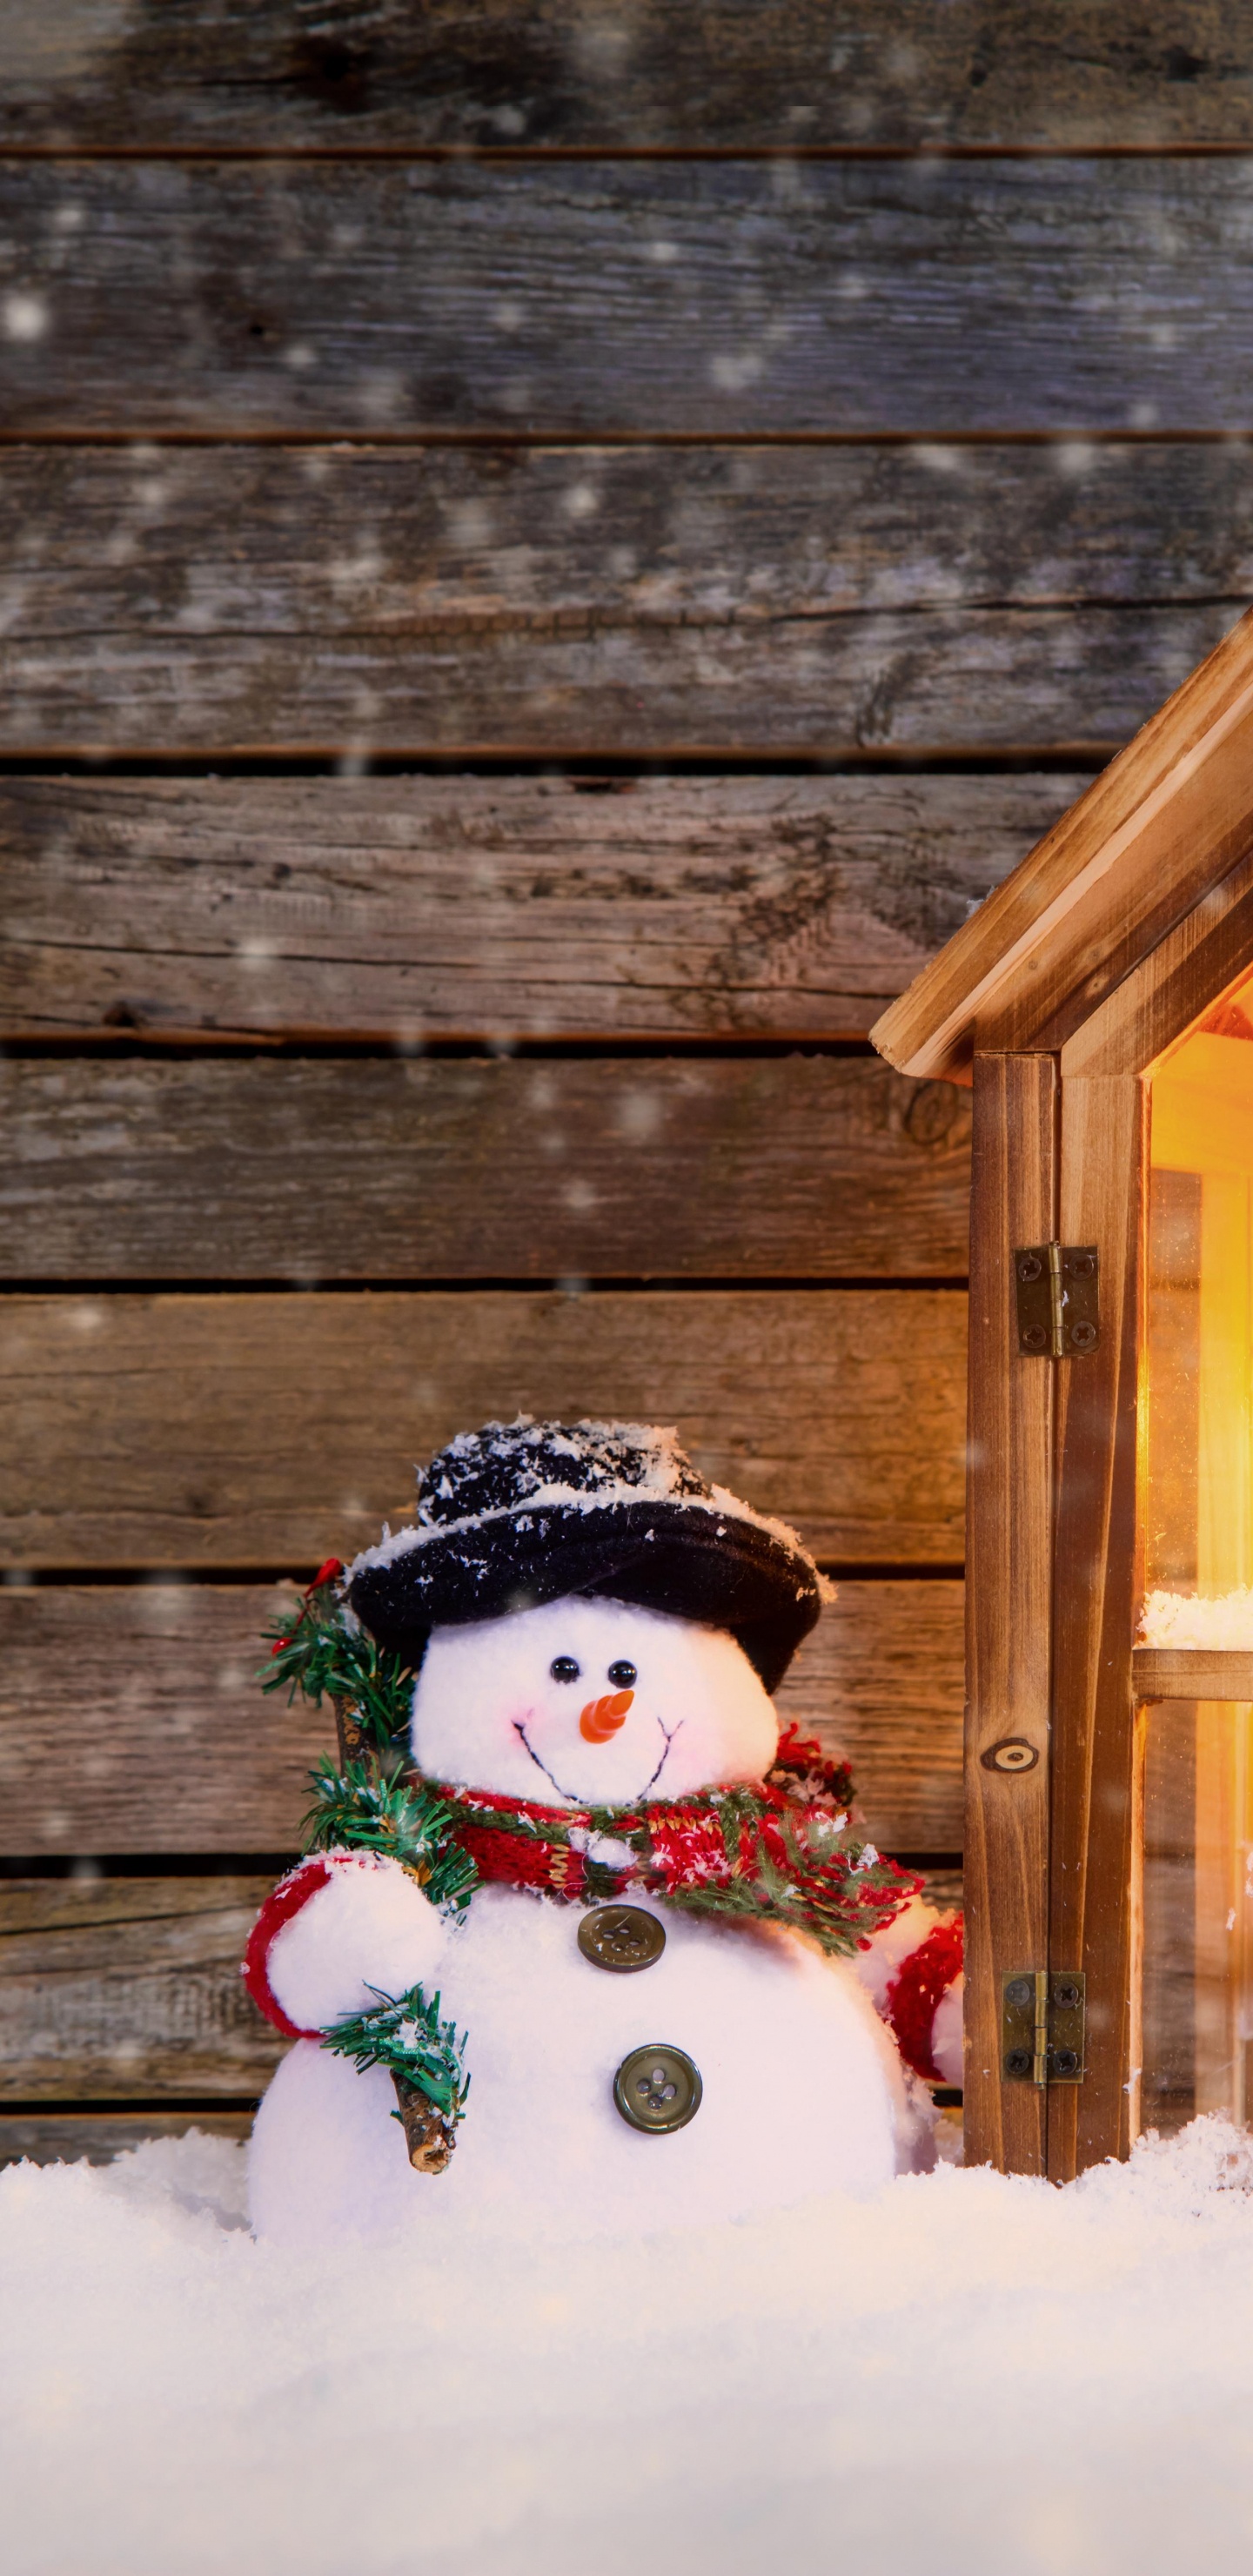 圣诞节那天, 雪人, 圣诞装饰, 圣诞节的装饰品, 冬天 壁纸 1440x2960 允许